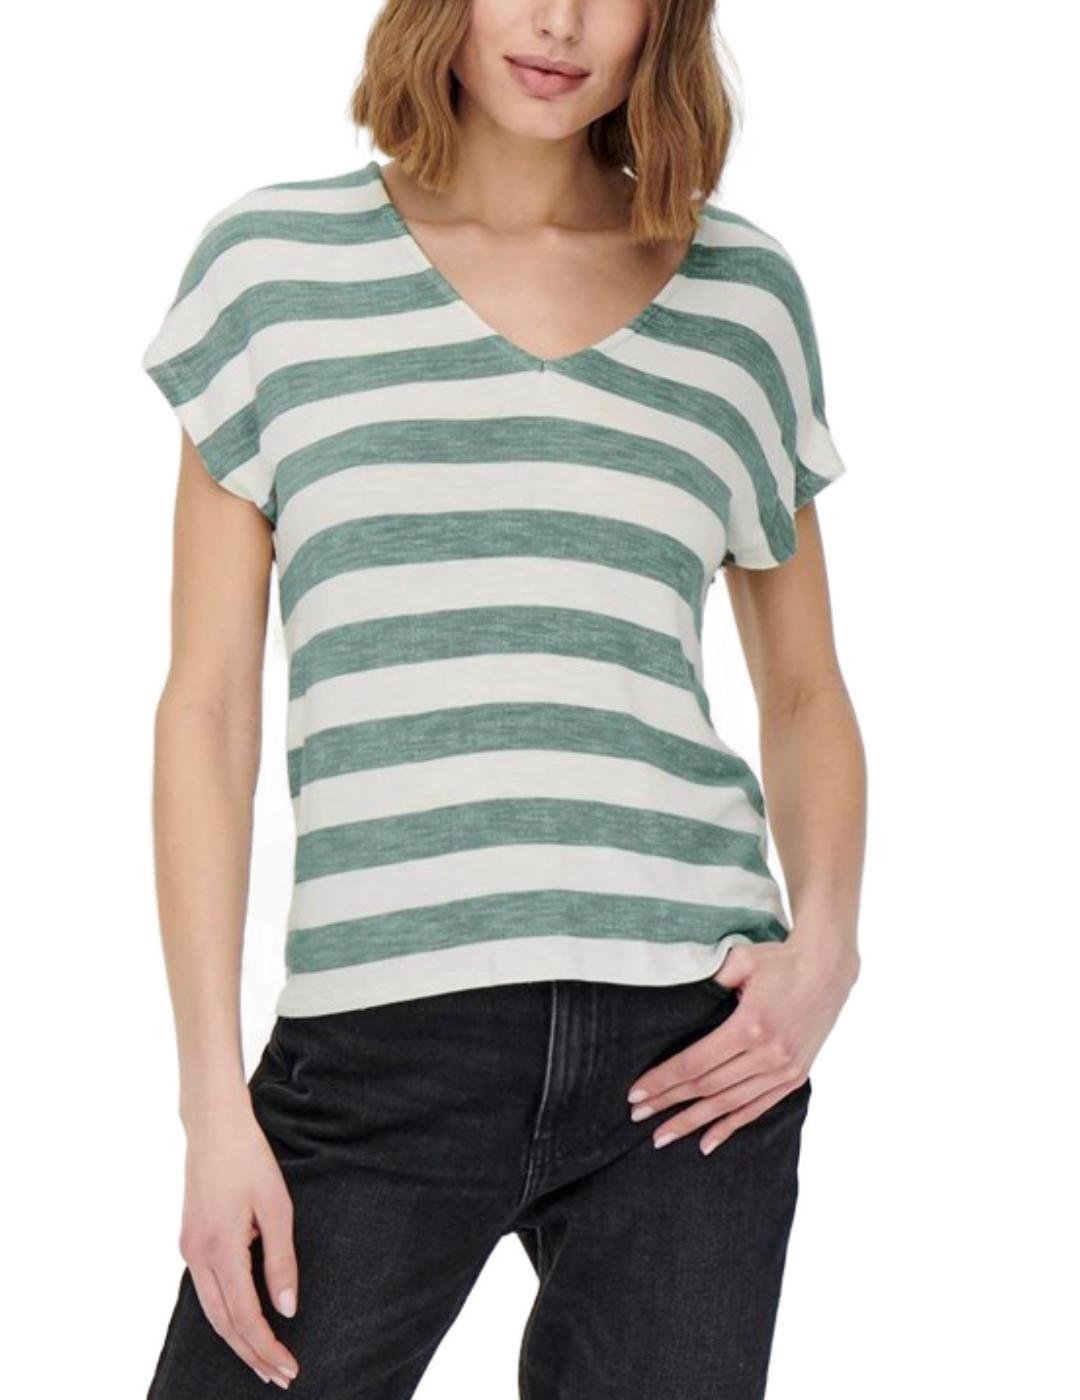 Camiseta Only Lira verde rayas blancas manga corta de mujer